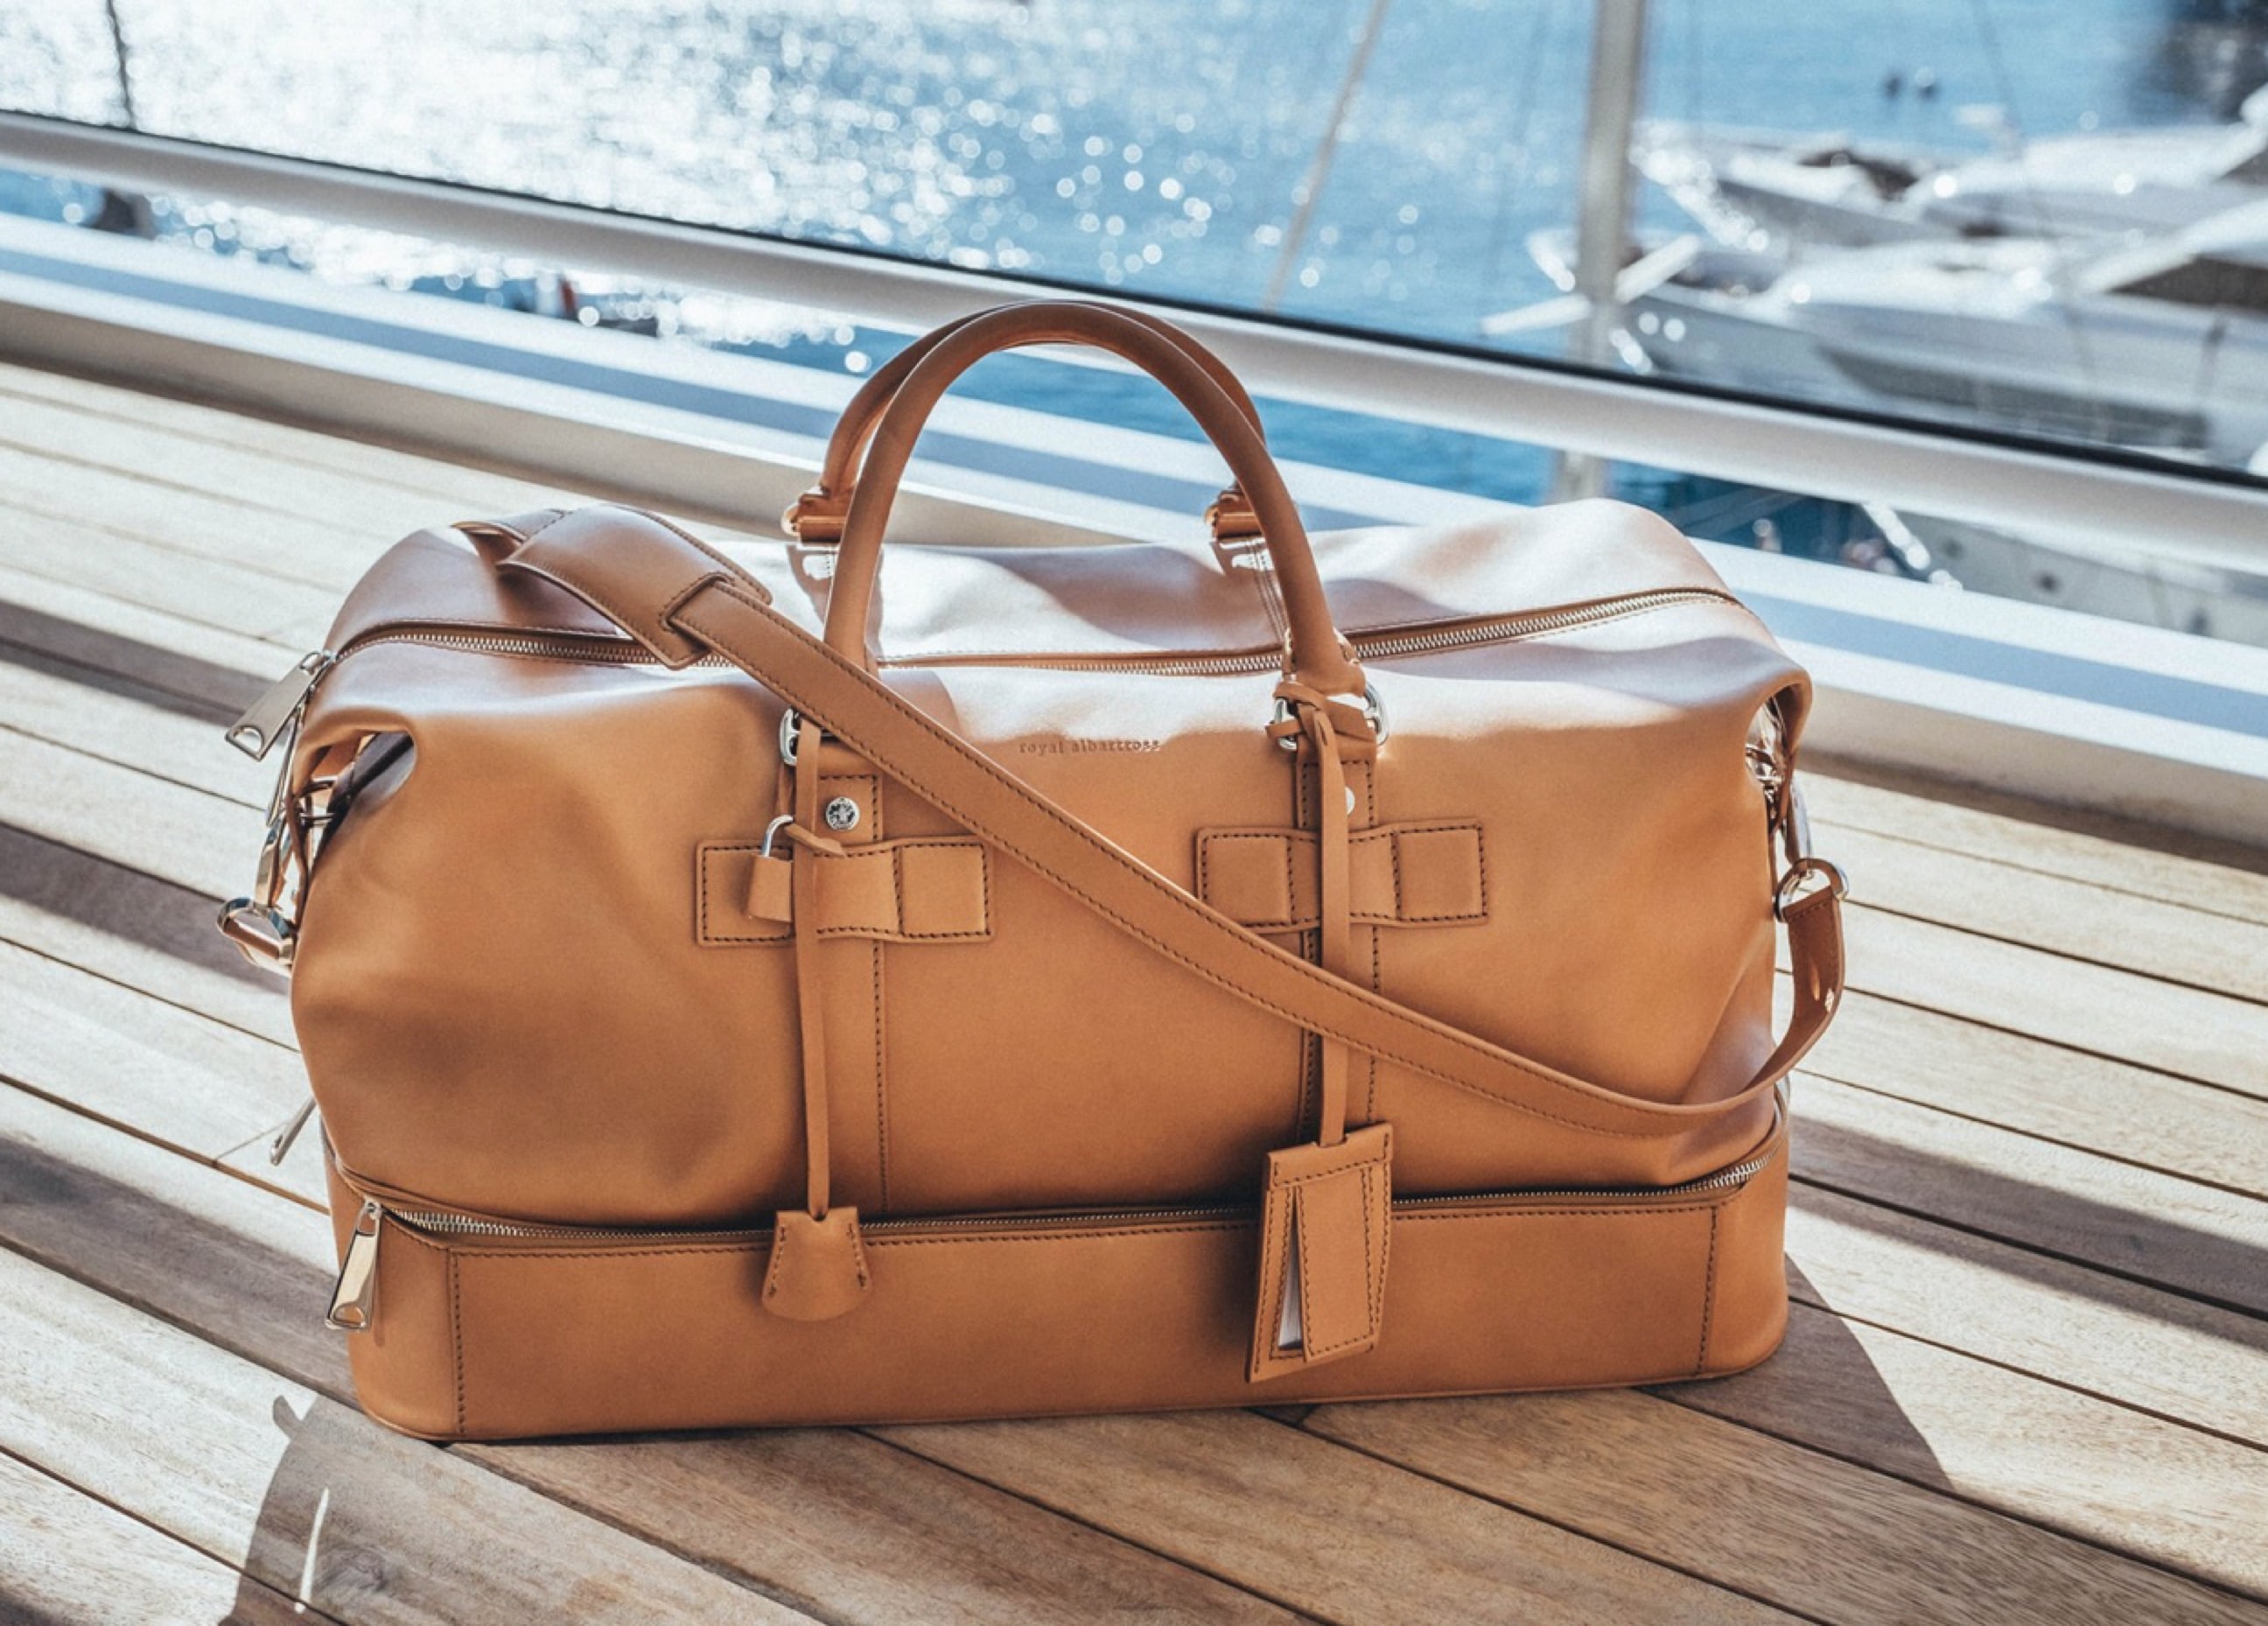 The Albartross Travel Bag